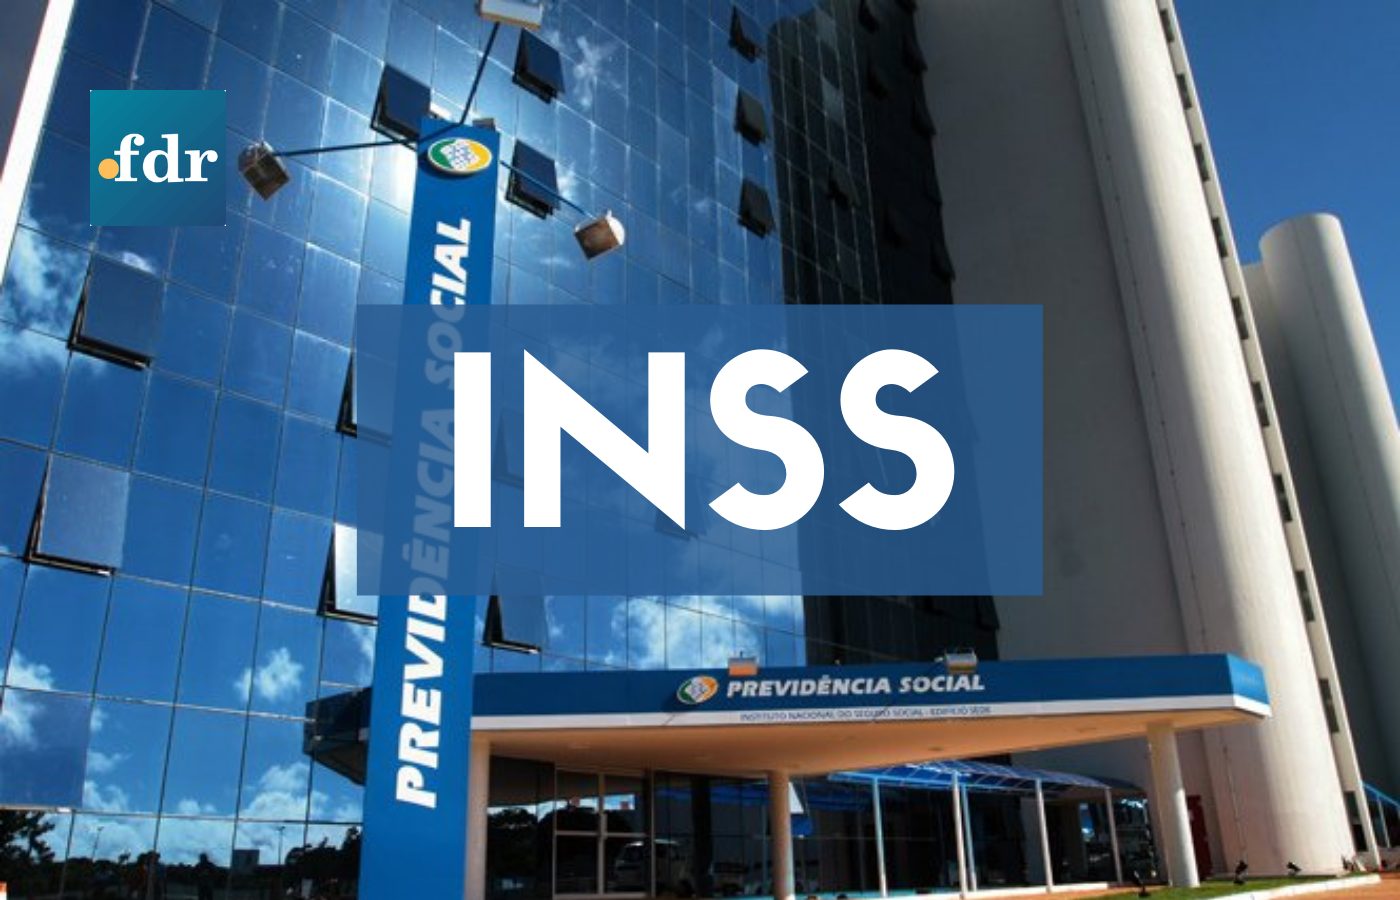 13º salário do INSS é concedido para um novo grupo: confira (Imagem: FDR)